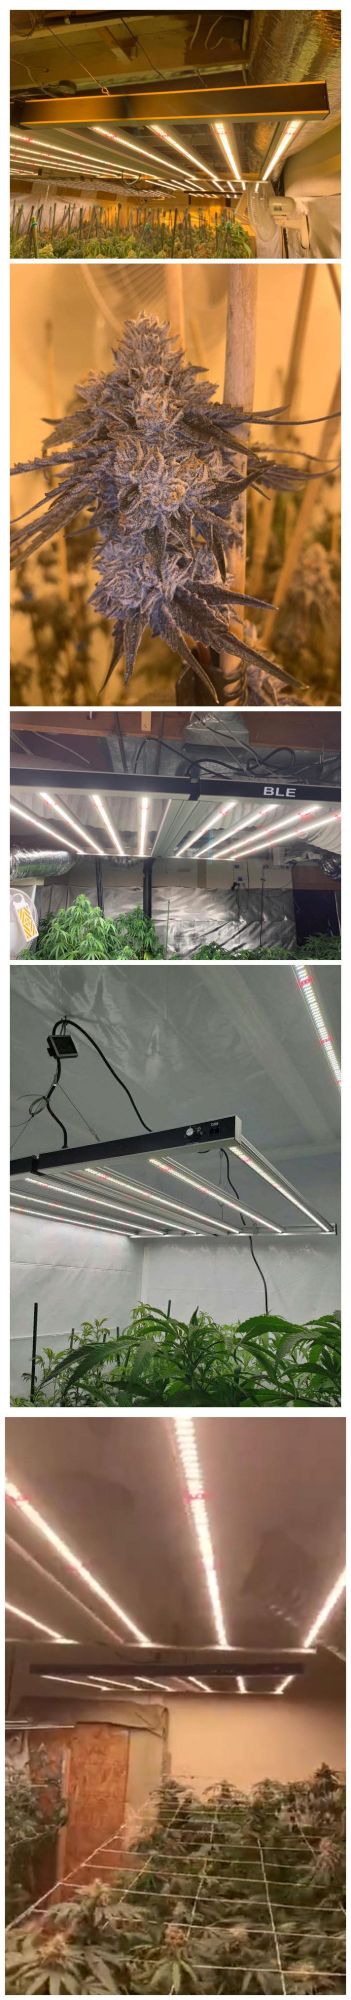 Medical Hydroponic Systems Aeroponic Farming 660W 880W 1000W LED Grow Lights